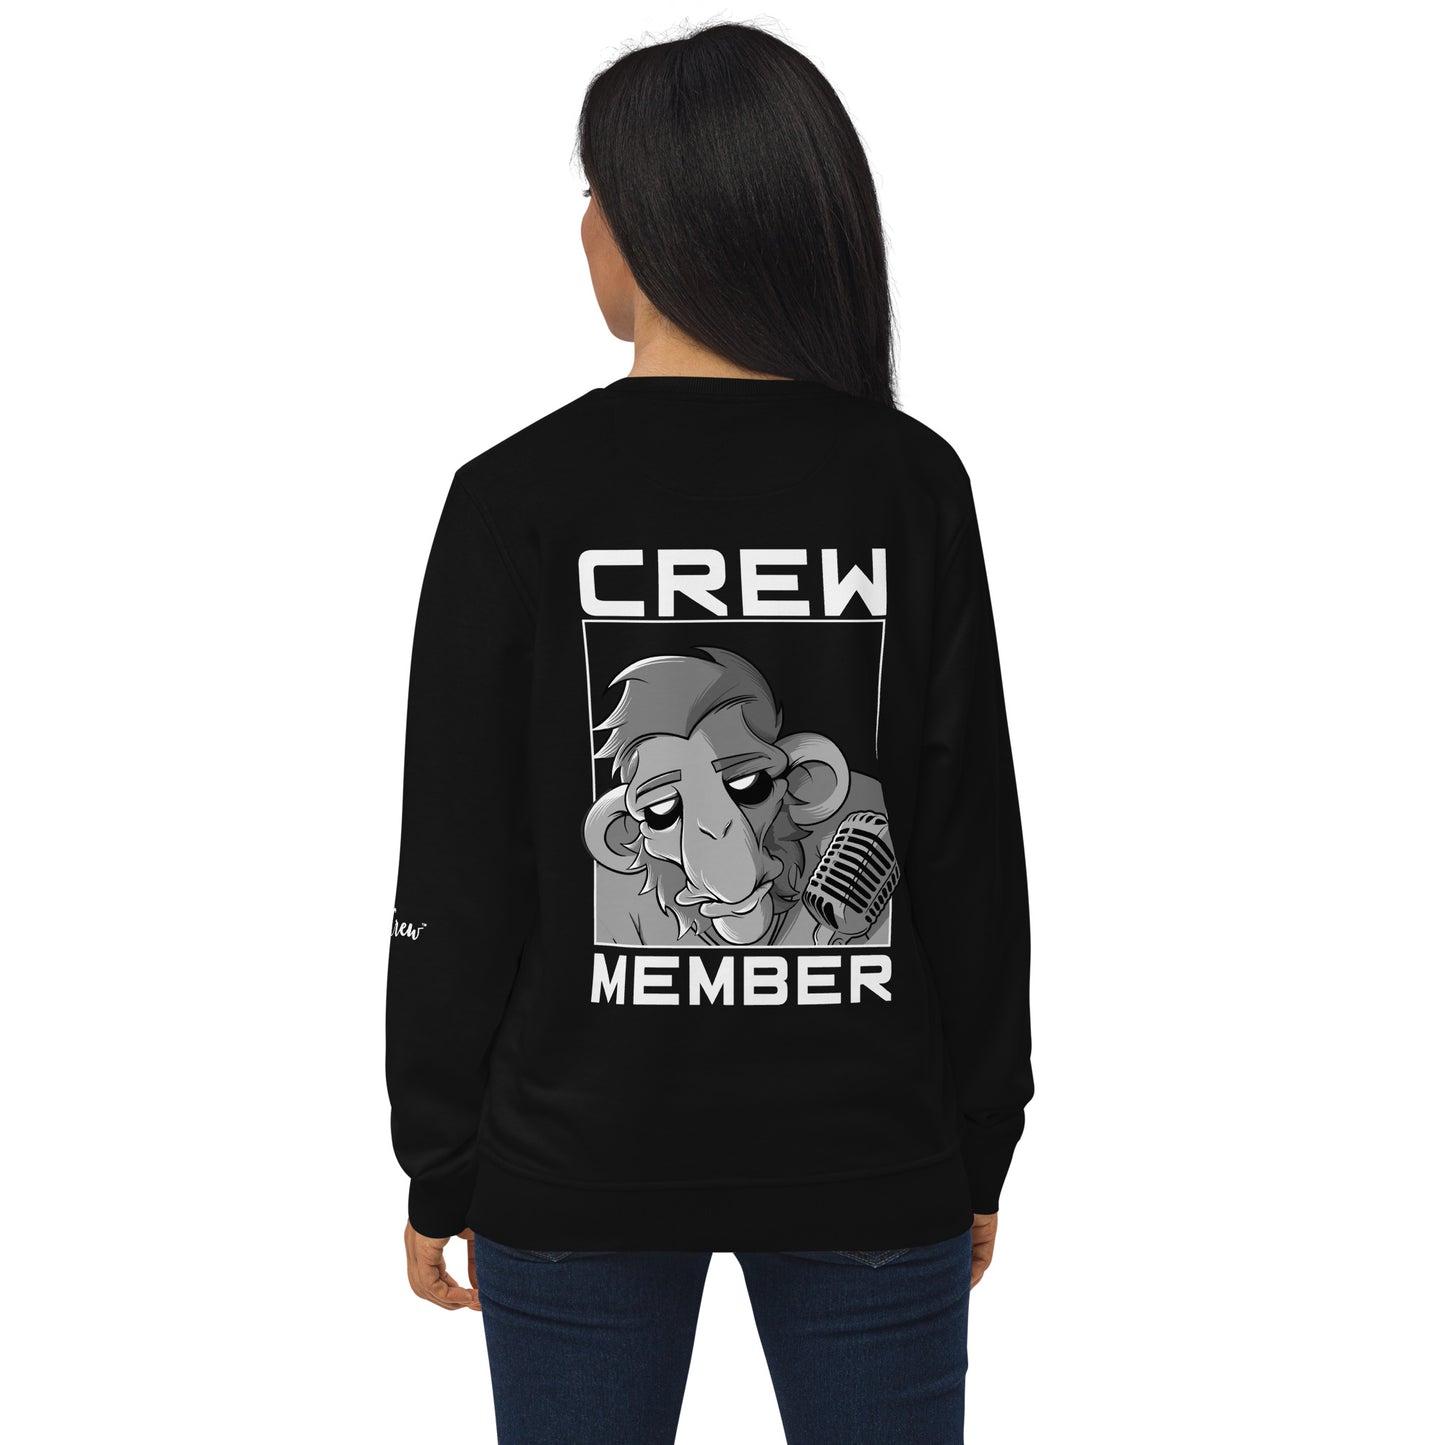 The Gig Crew Unisex Sweatshirt